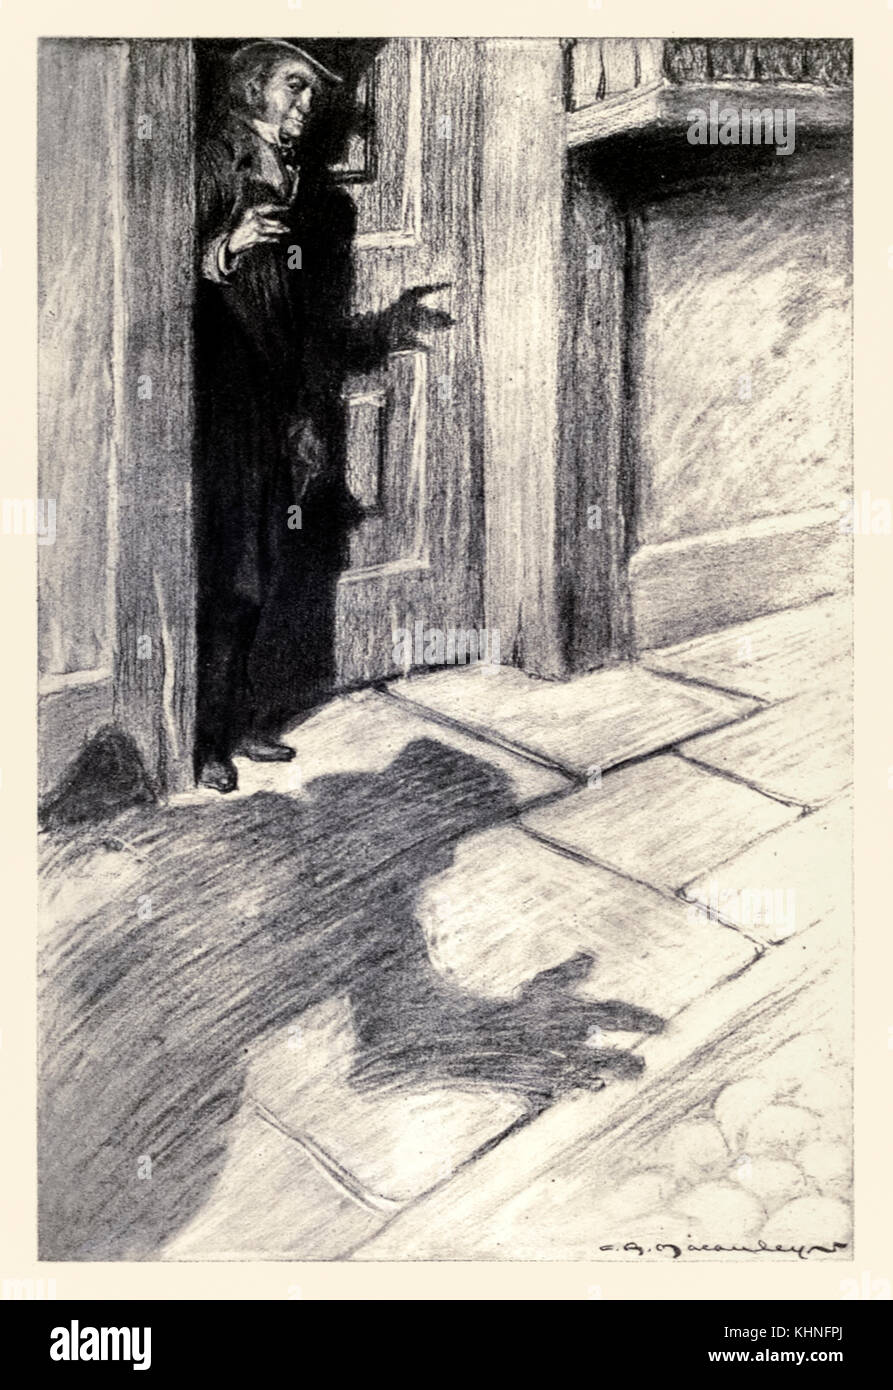 "M. Utterson était au courant d'une étrange lumière, pied étape proche' dans le cas d 'étranges Dr Jekyll et Mr Hyde" de Robert Louis Stevenson (1850-1894) illustré par Charles Raymond (1871-1934). Voir plus d'informations ci-dessous. Banque D'Images